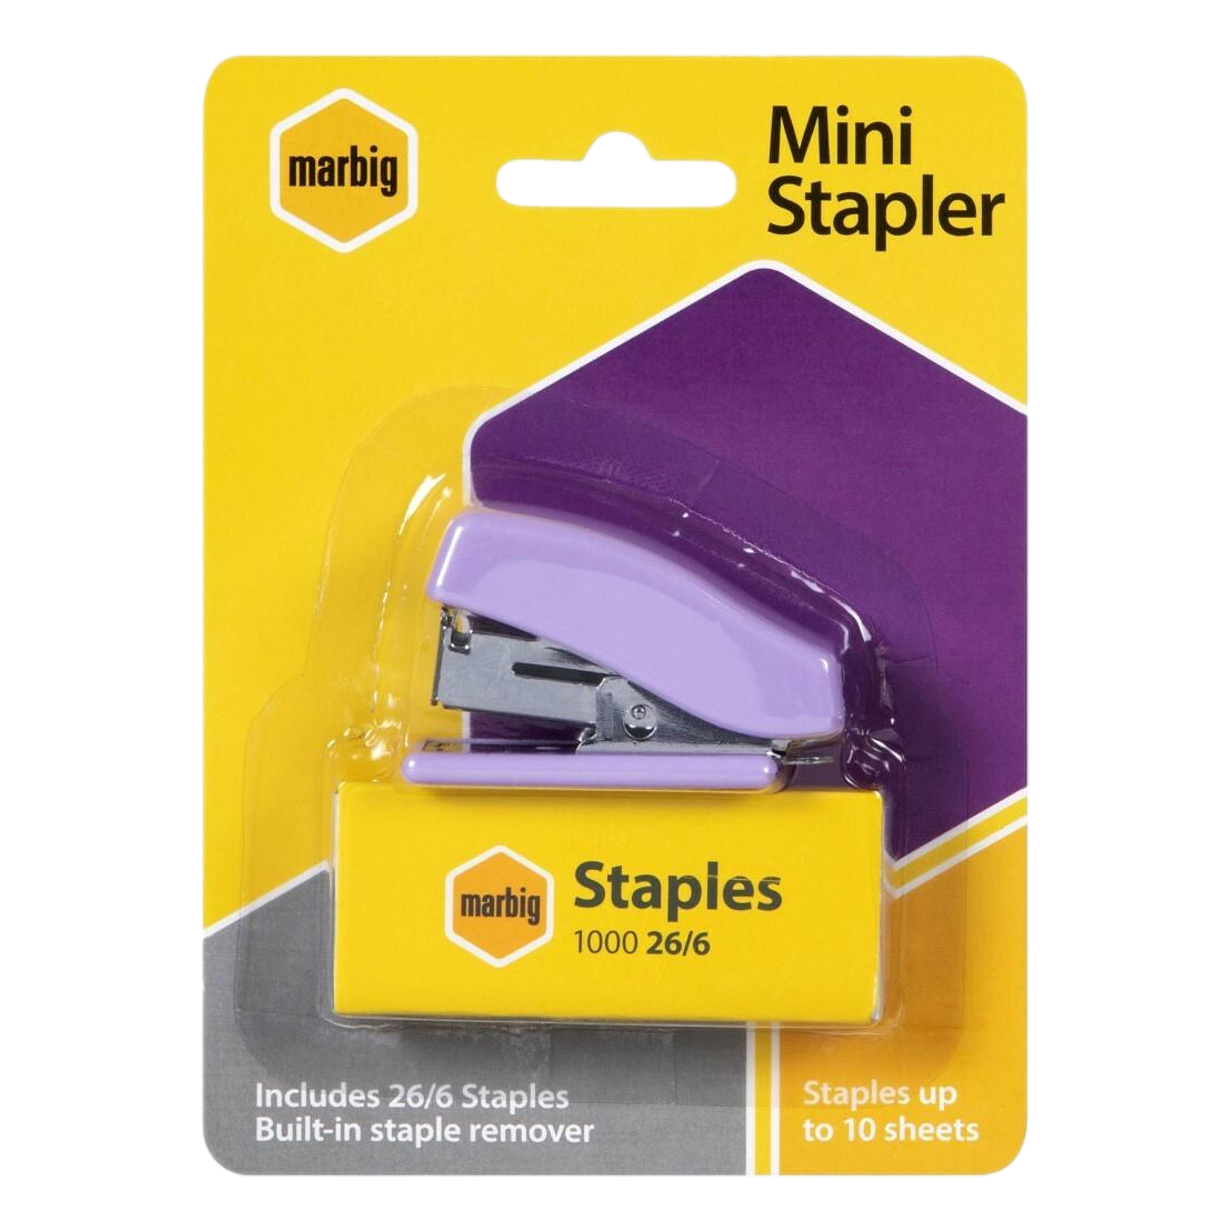 Marbig Mini Stapler & 26/6 Staples